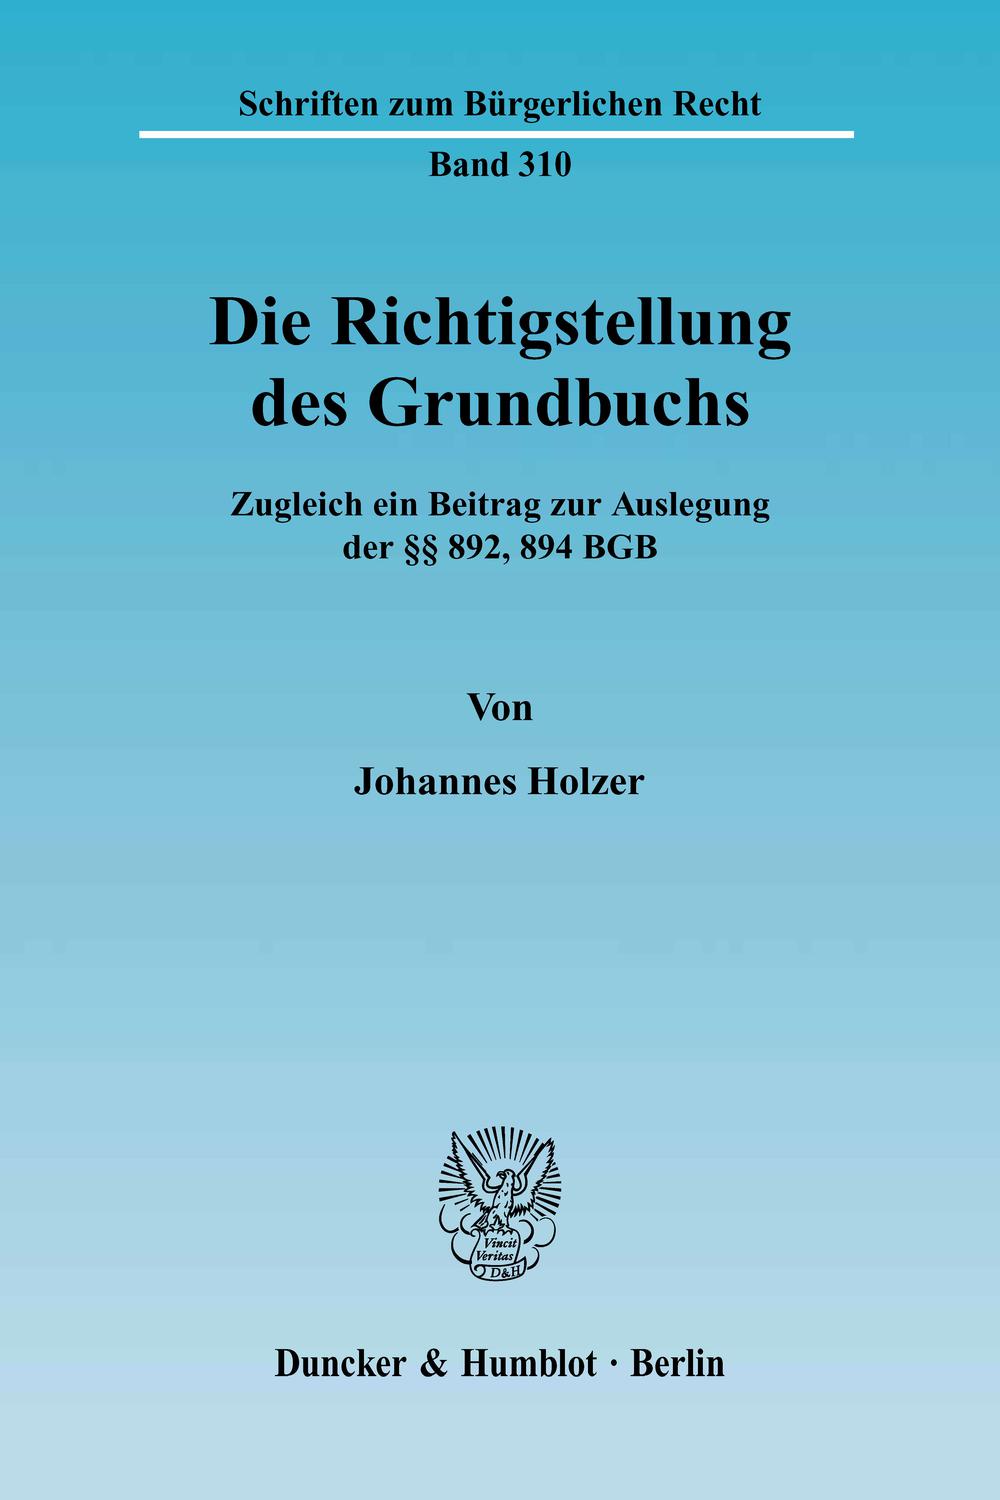 Die Richtigstellung des Grundbuchs. - Johannes Holzer